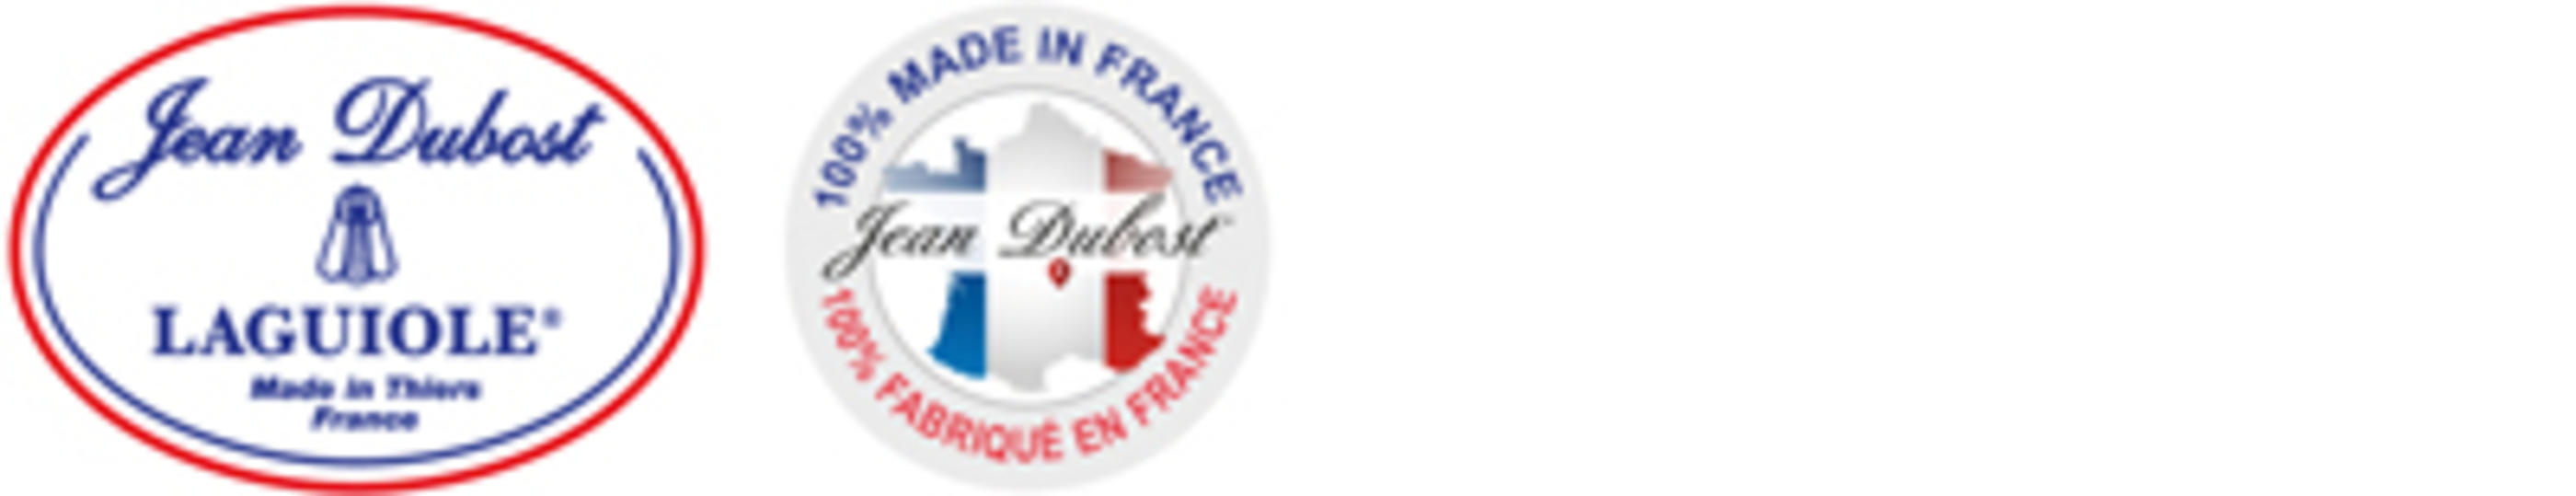 logo Jean Dubost JDL-CF-400x77px